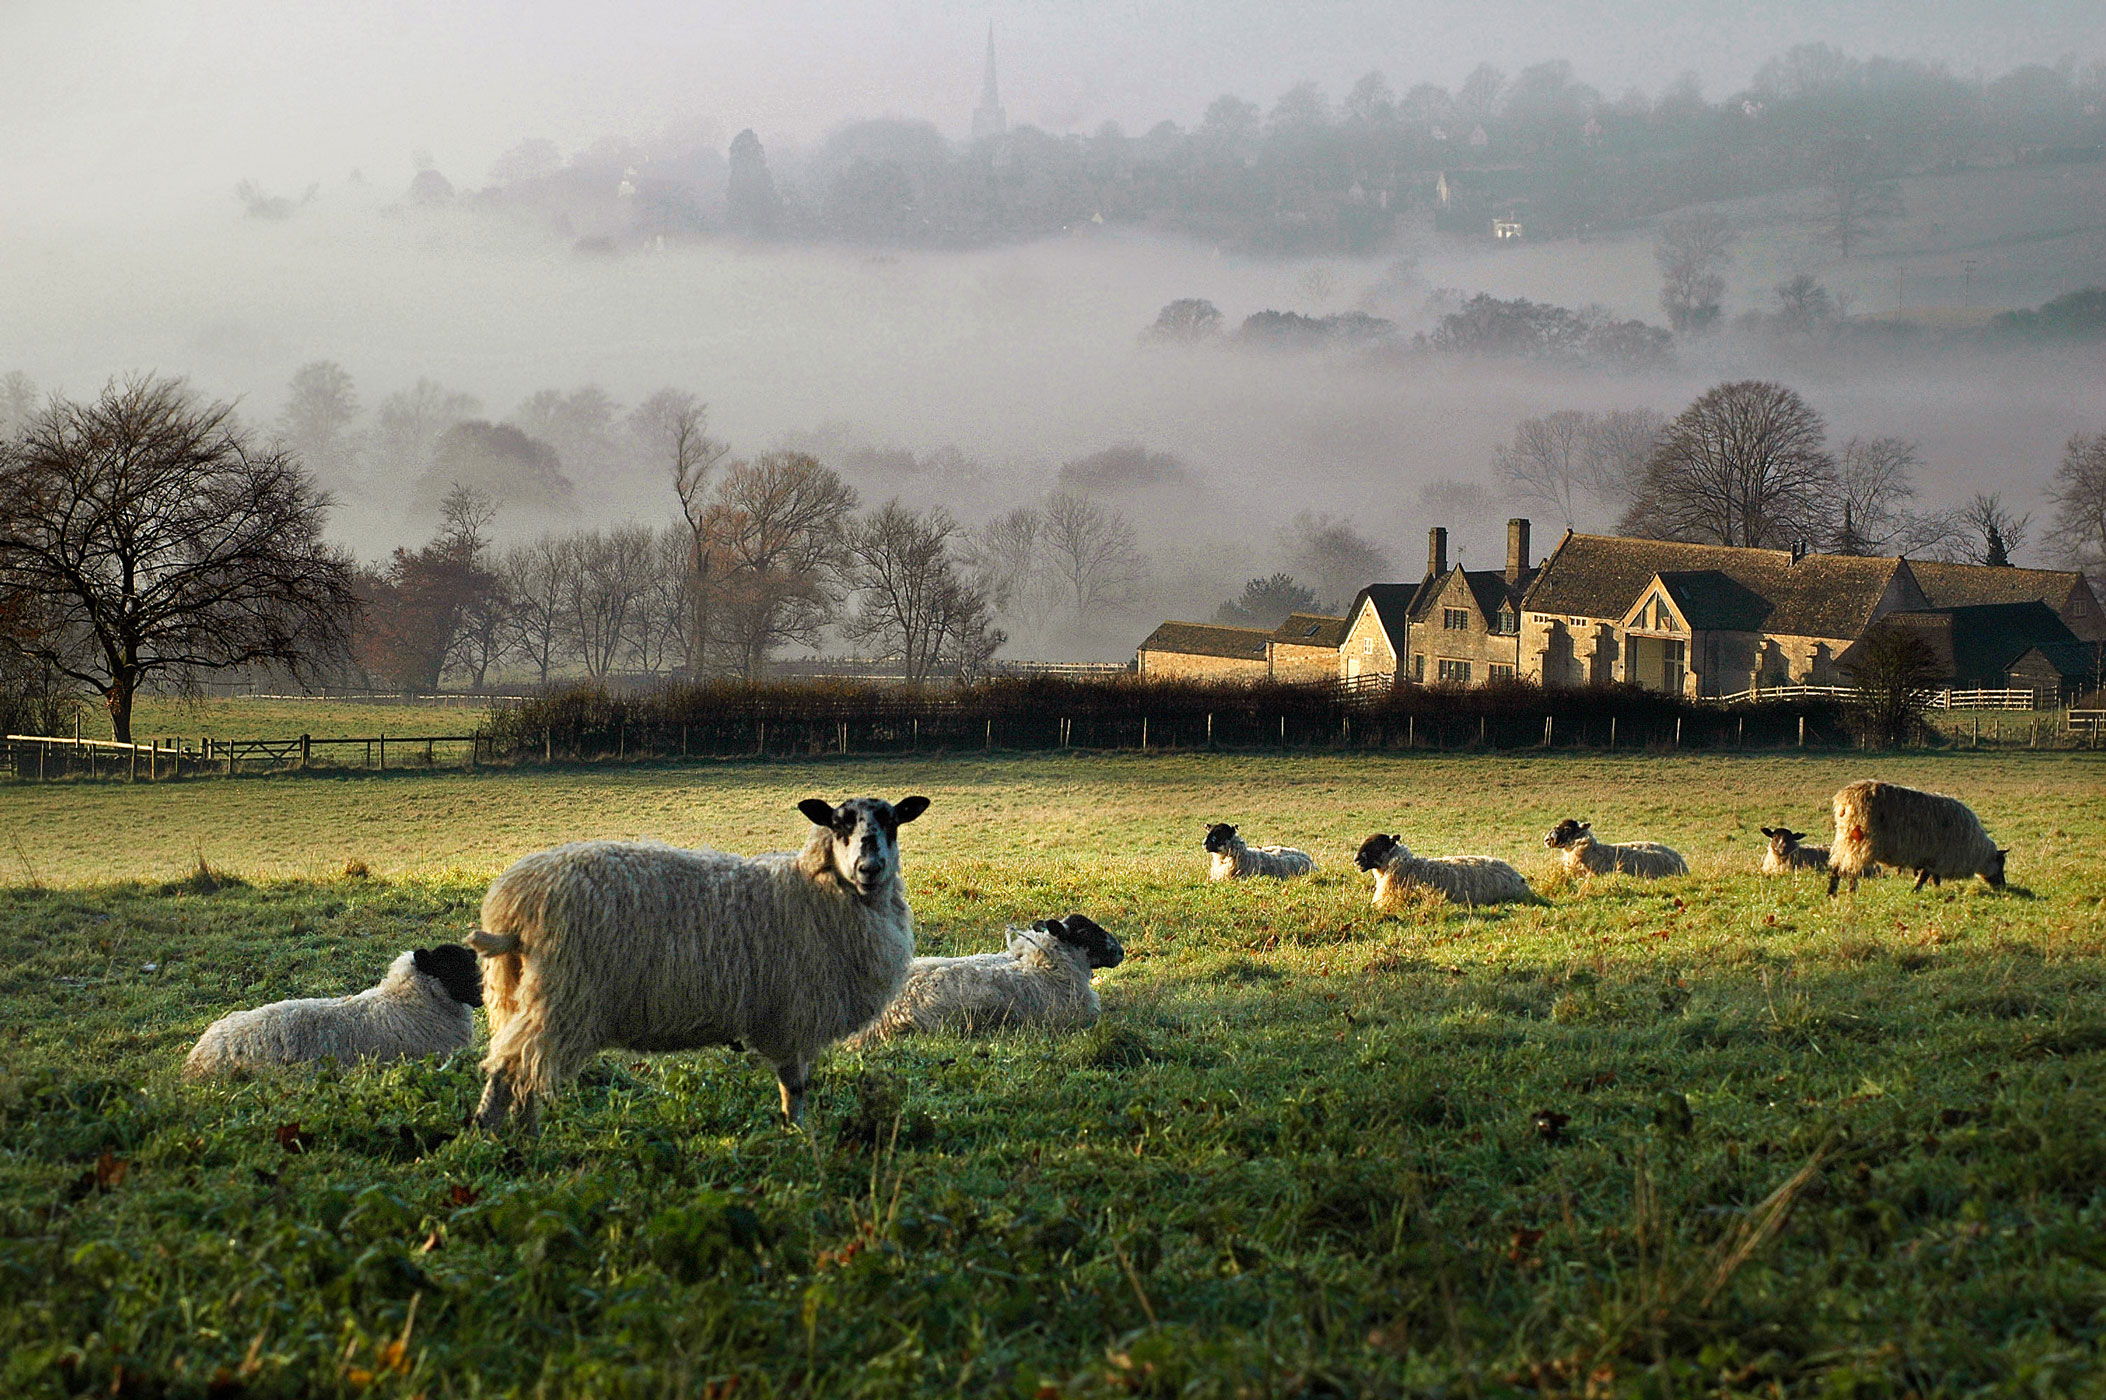 Countryside life 18. Котсуолдс Англия ферма. Сельская местность в Англии Котсуолд. Йоркшир Англия ферма. Котсуолдс Англия овцы.